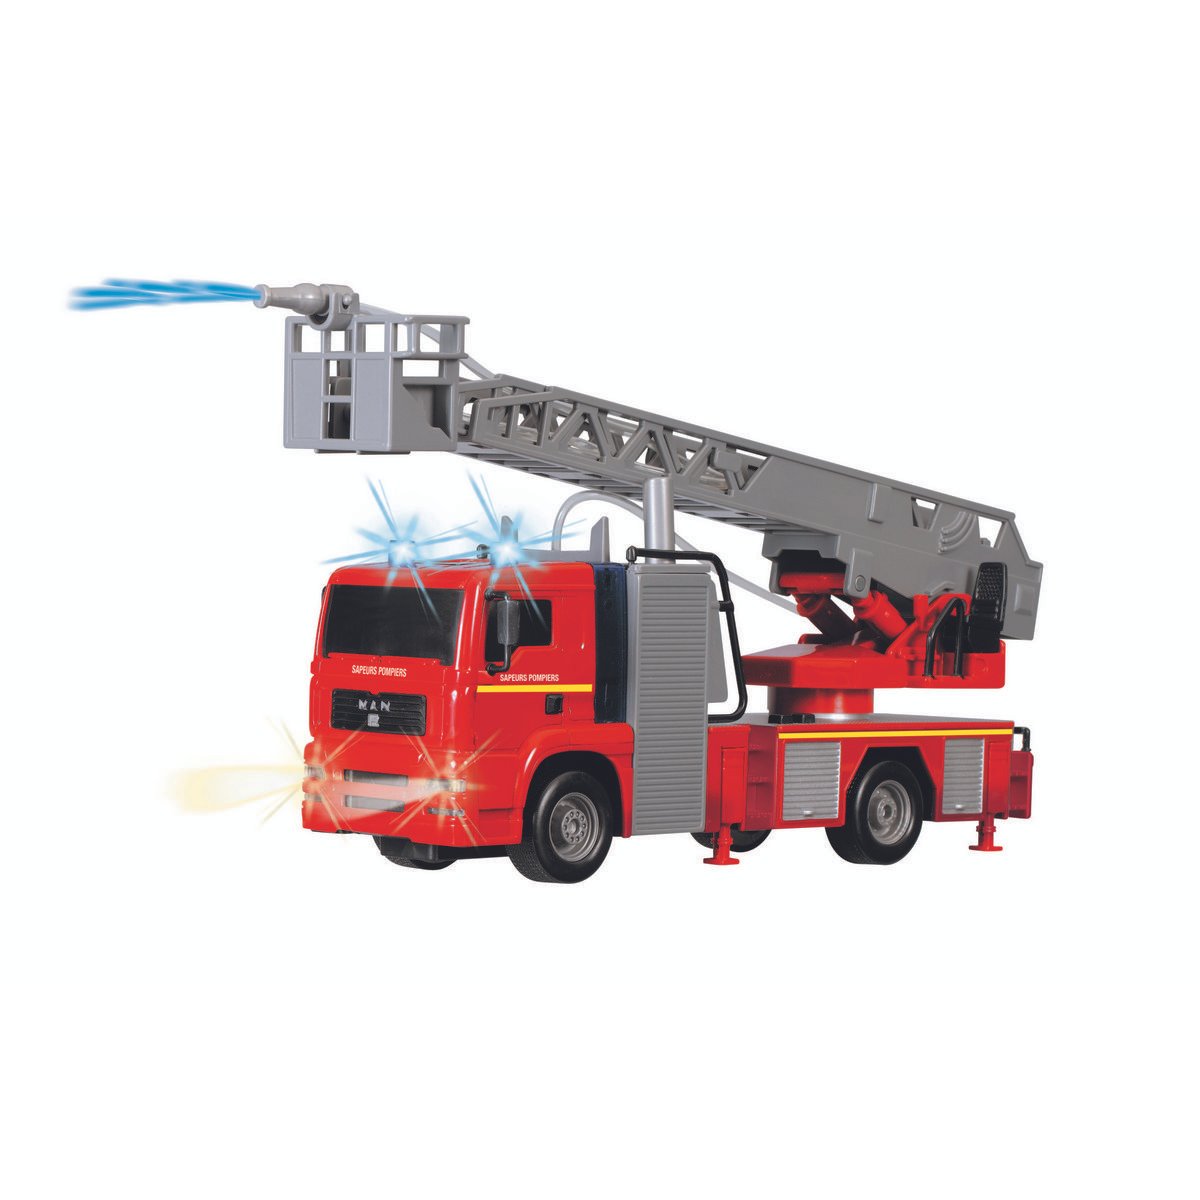 Camion Pompiers + camion poubelle Volvo - Majorette grande série 1/43e - La  Grande Récré